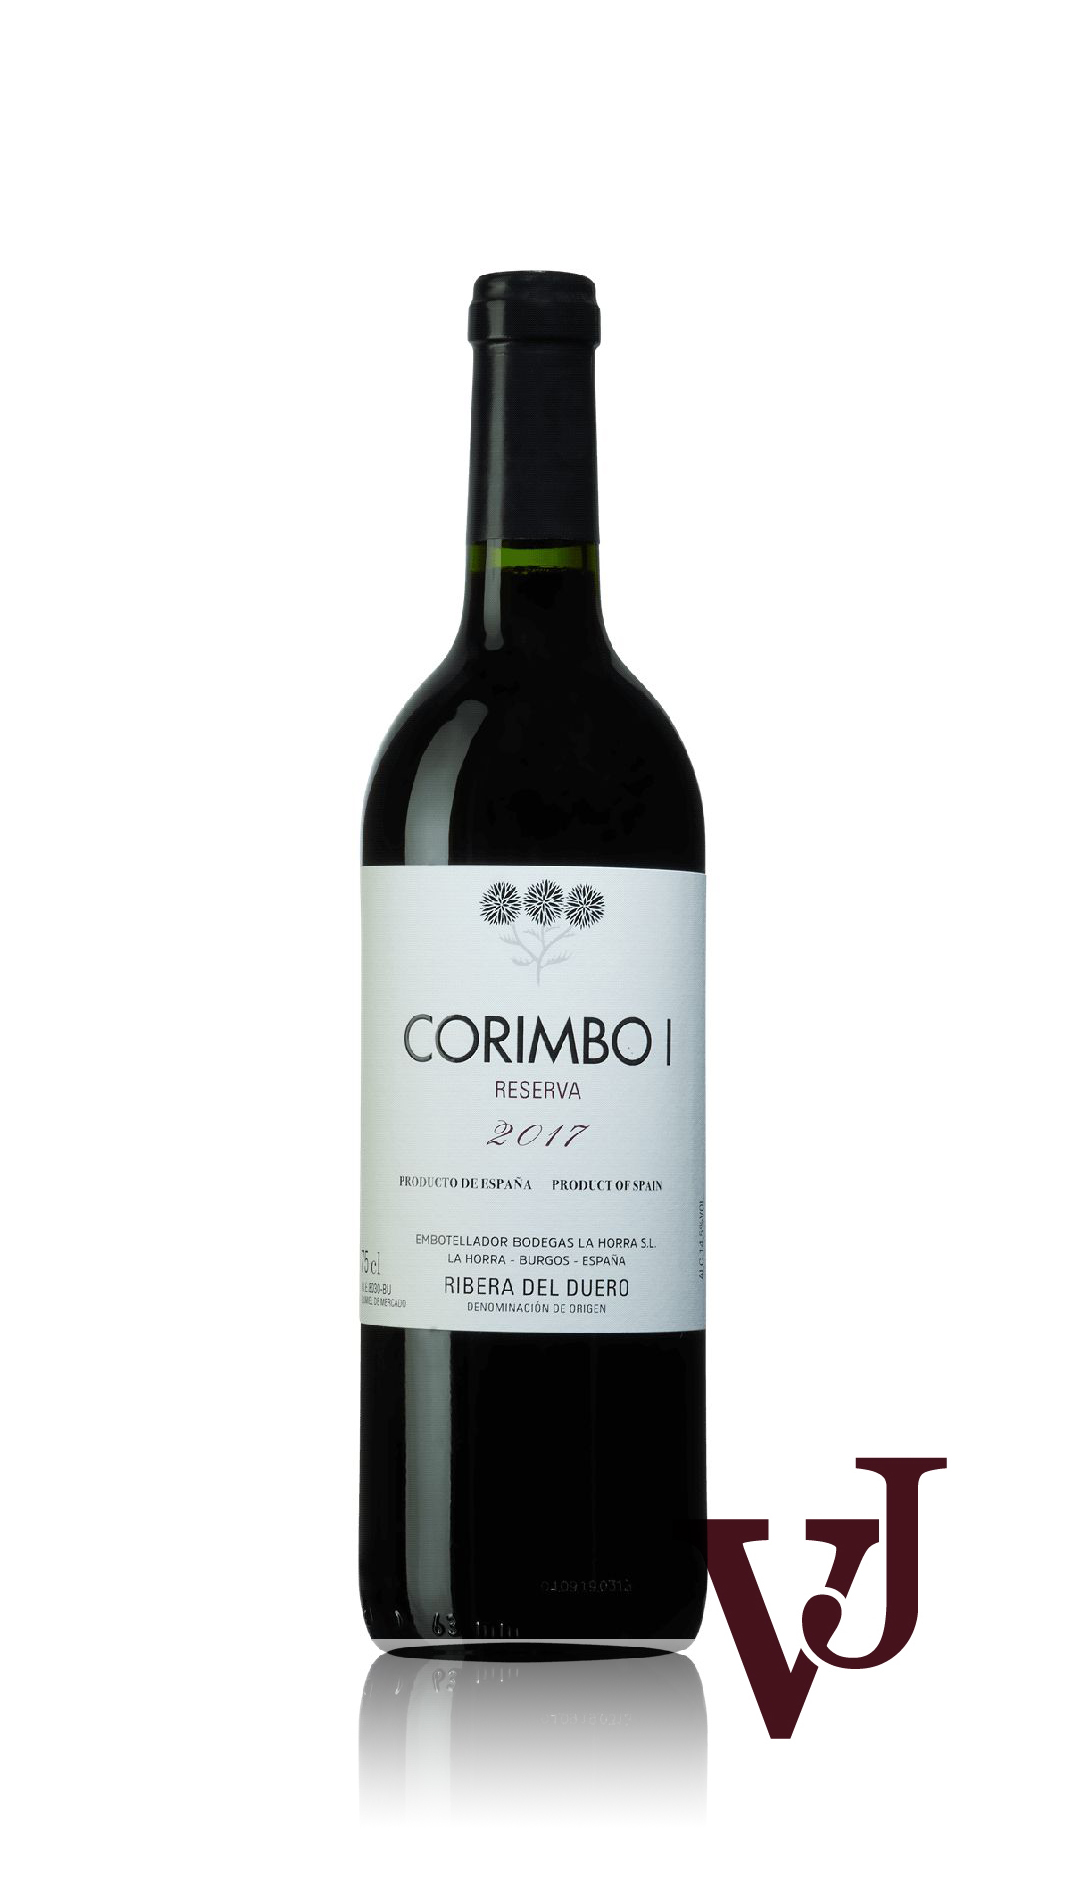 Rött Vin - Corimbo I Bodegas La Horra 2017 artikel nummer 9433801 från producenten Bodegas La Horra från Spanien